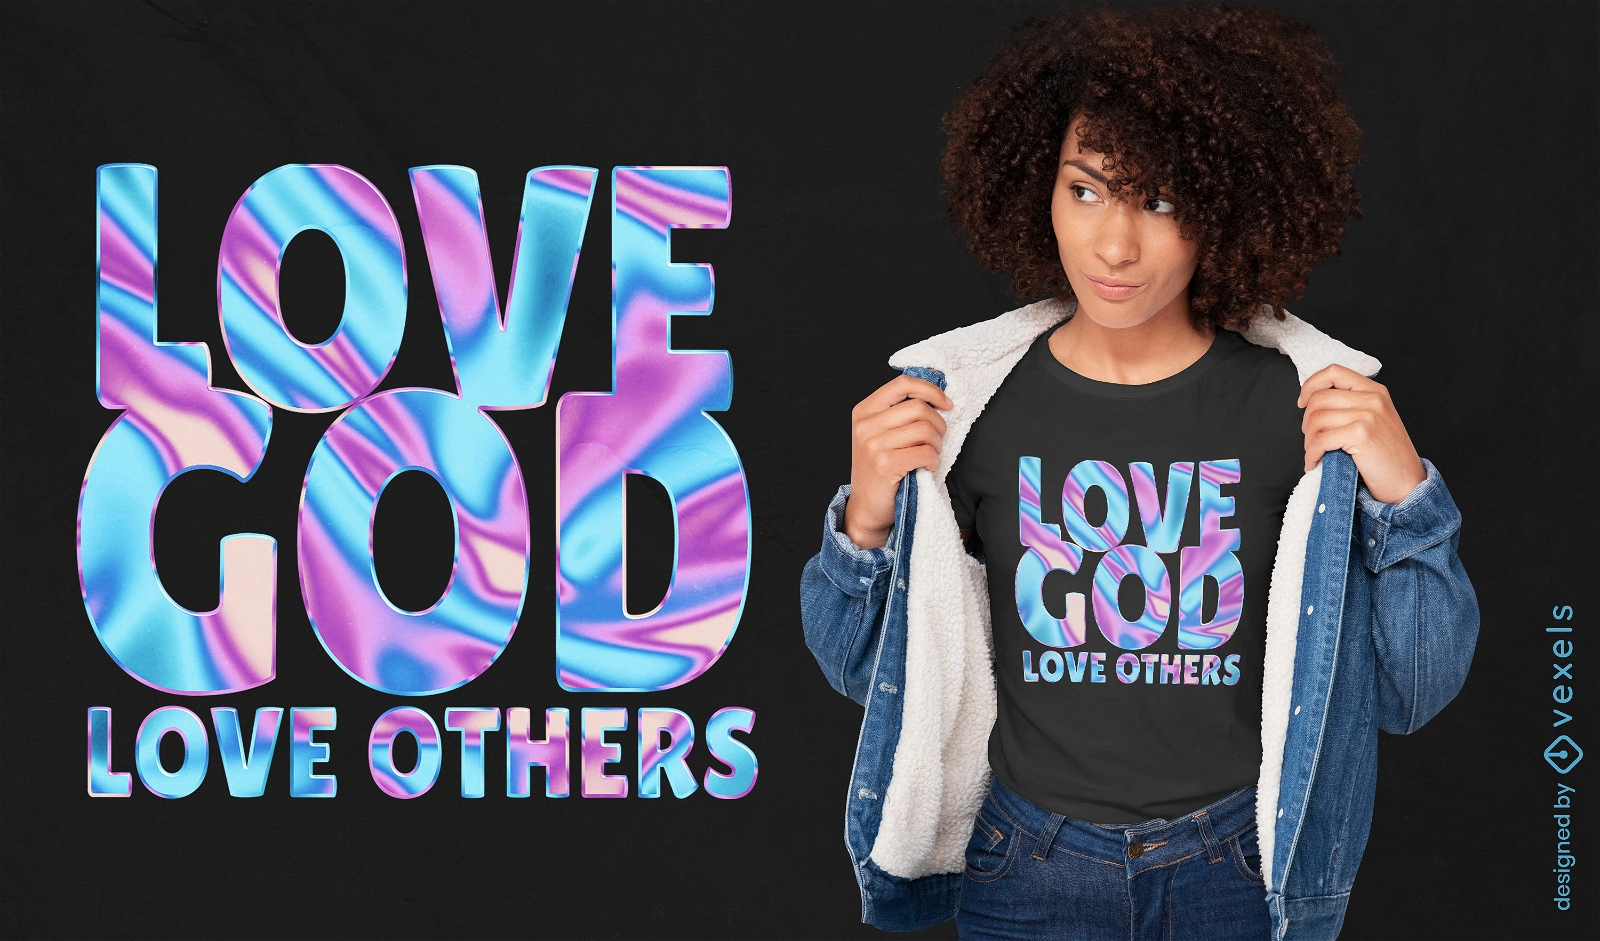 Design inspirador de camisetas com cita?es religiosas